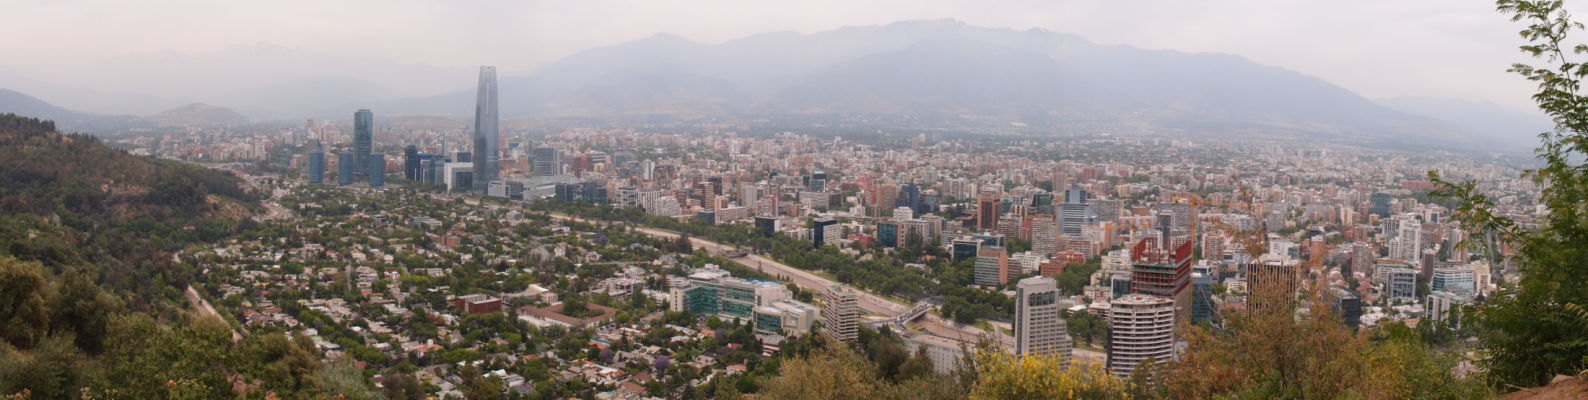 Výhľad z kopca San Cristóbal v Santiagu - Gran Torre Santiago, najvyšší mrakodrap v Južnej Amerike